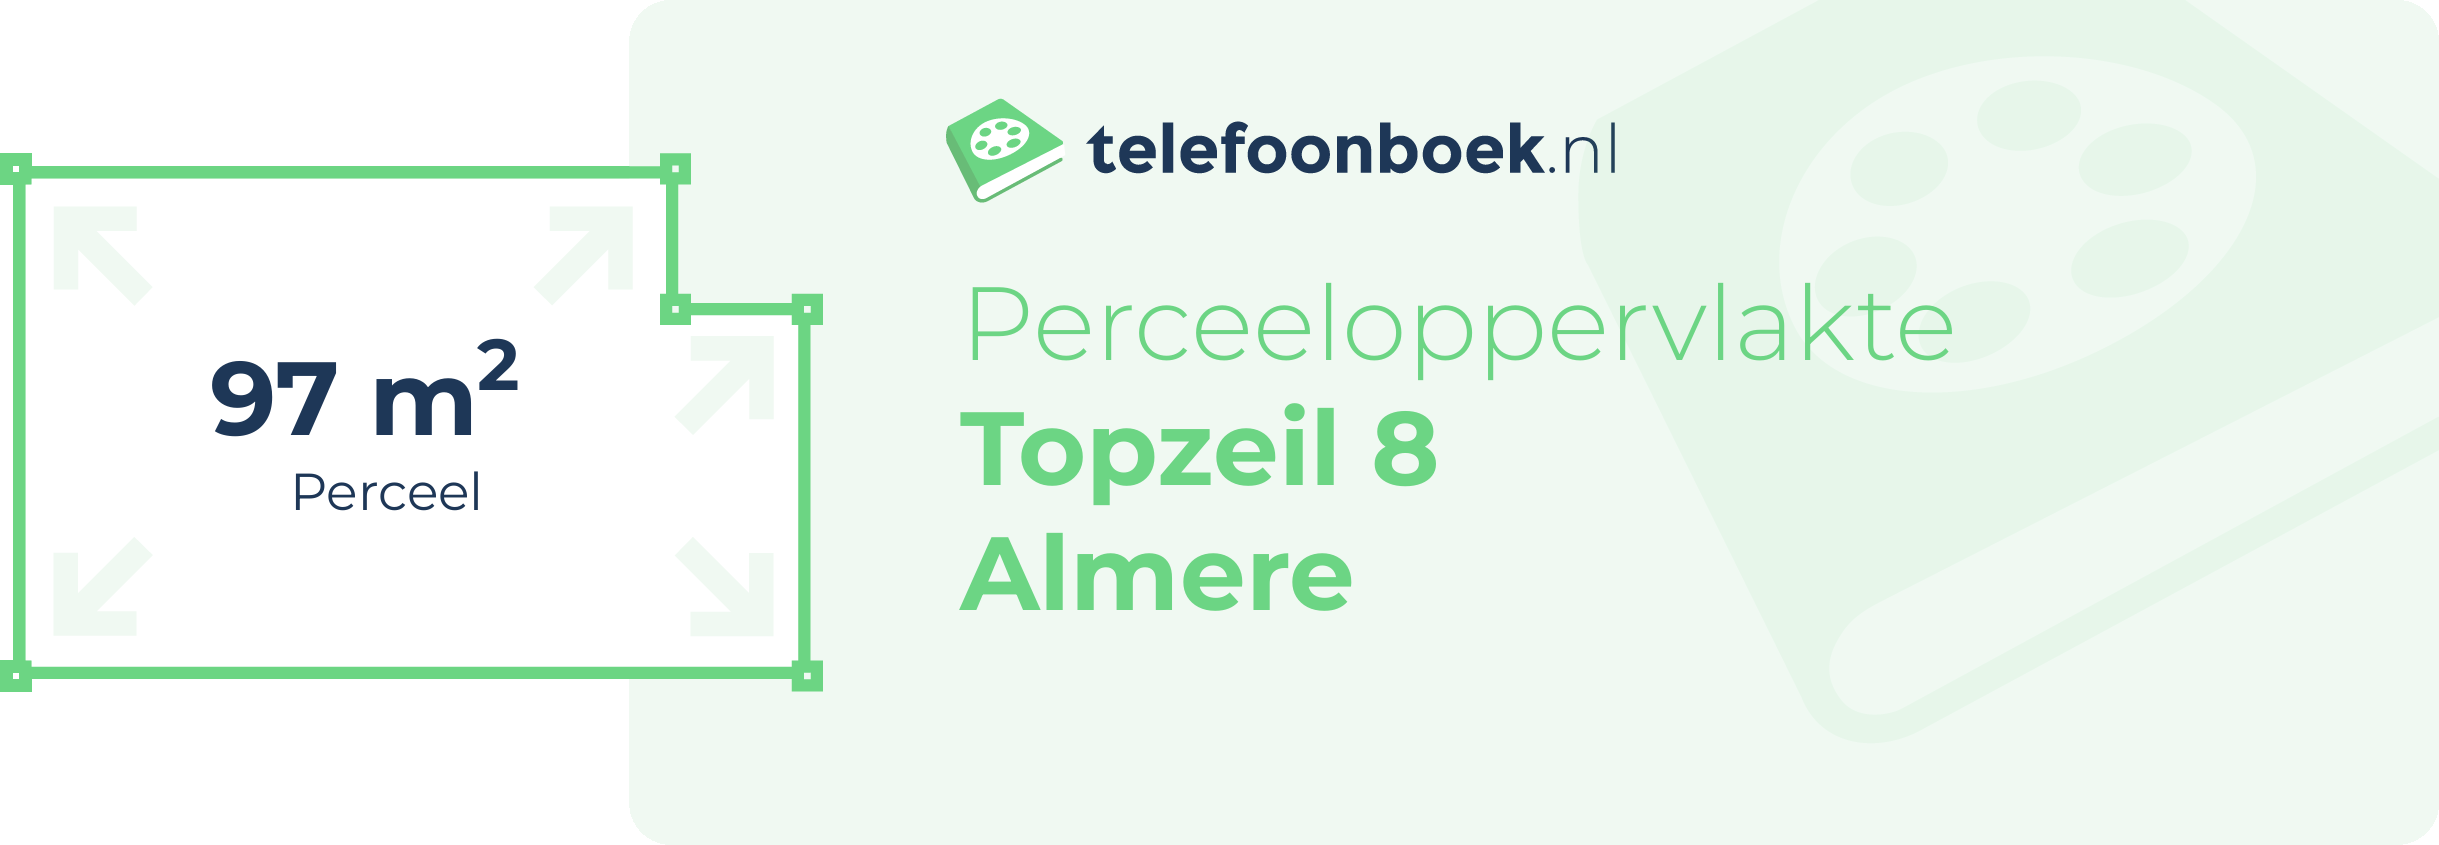 Perceeloppervlakte Topzeil 8 Almere